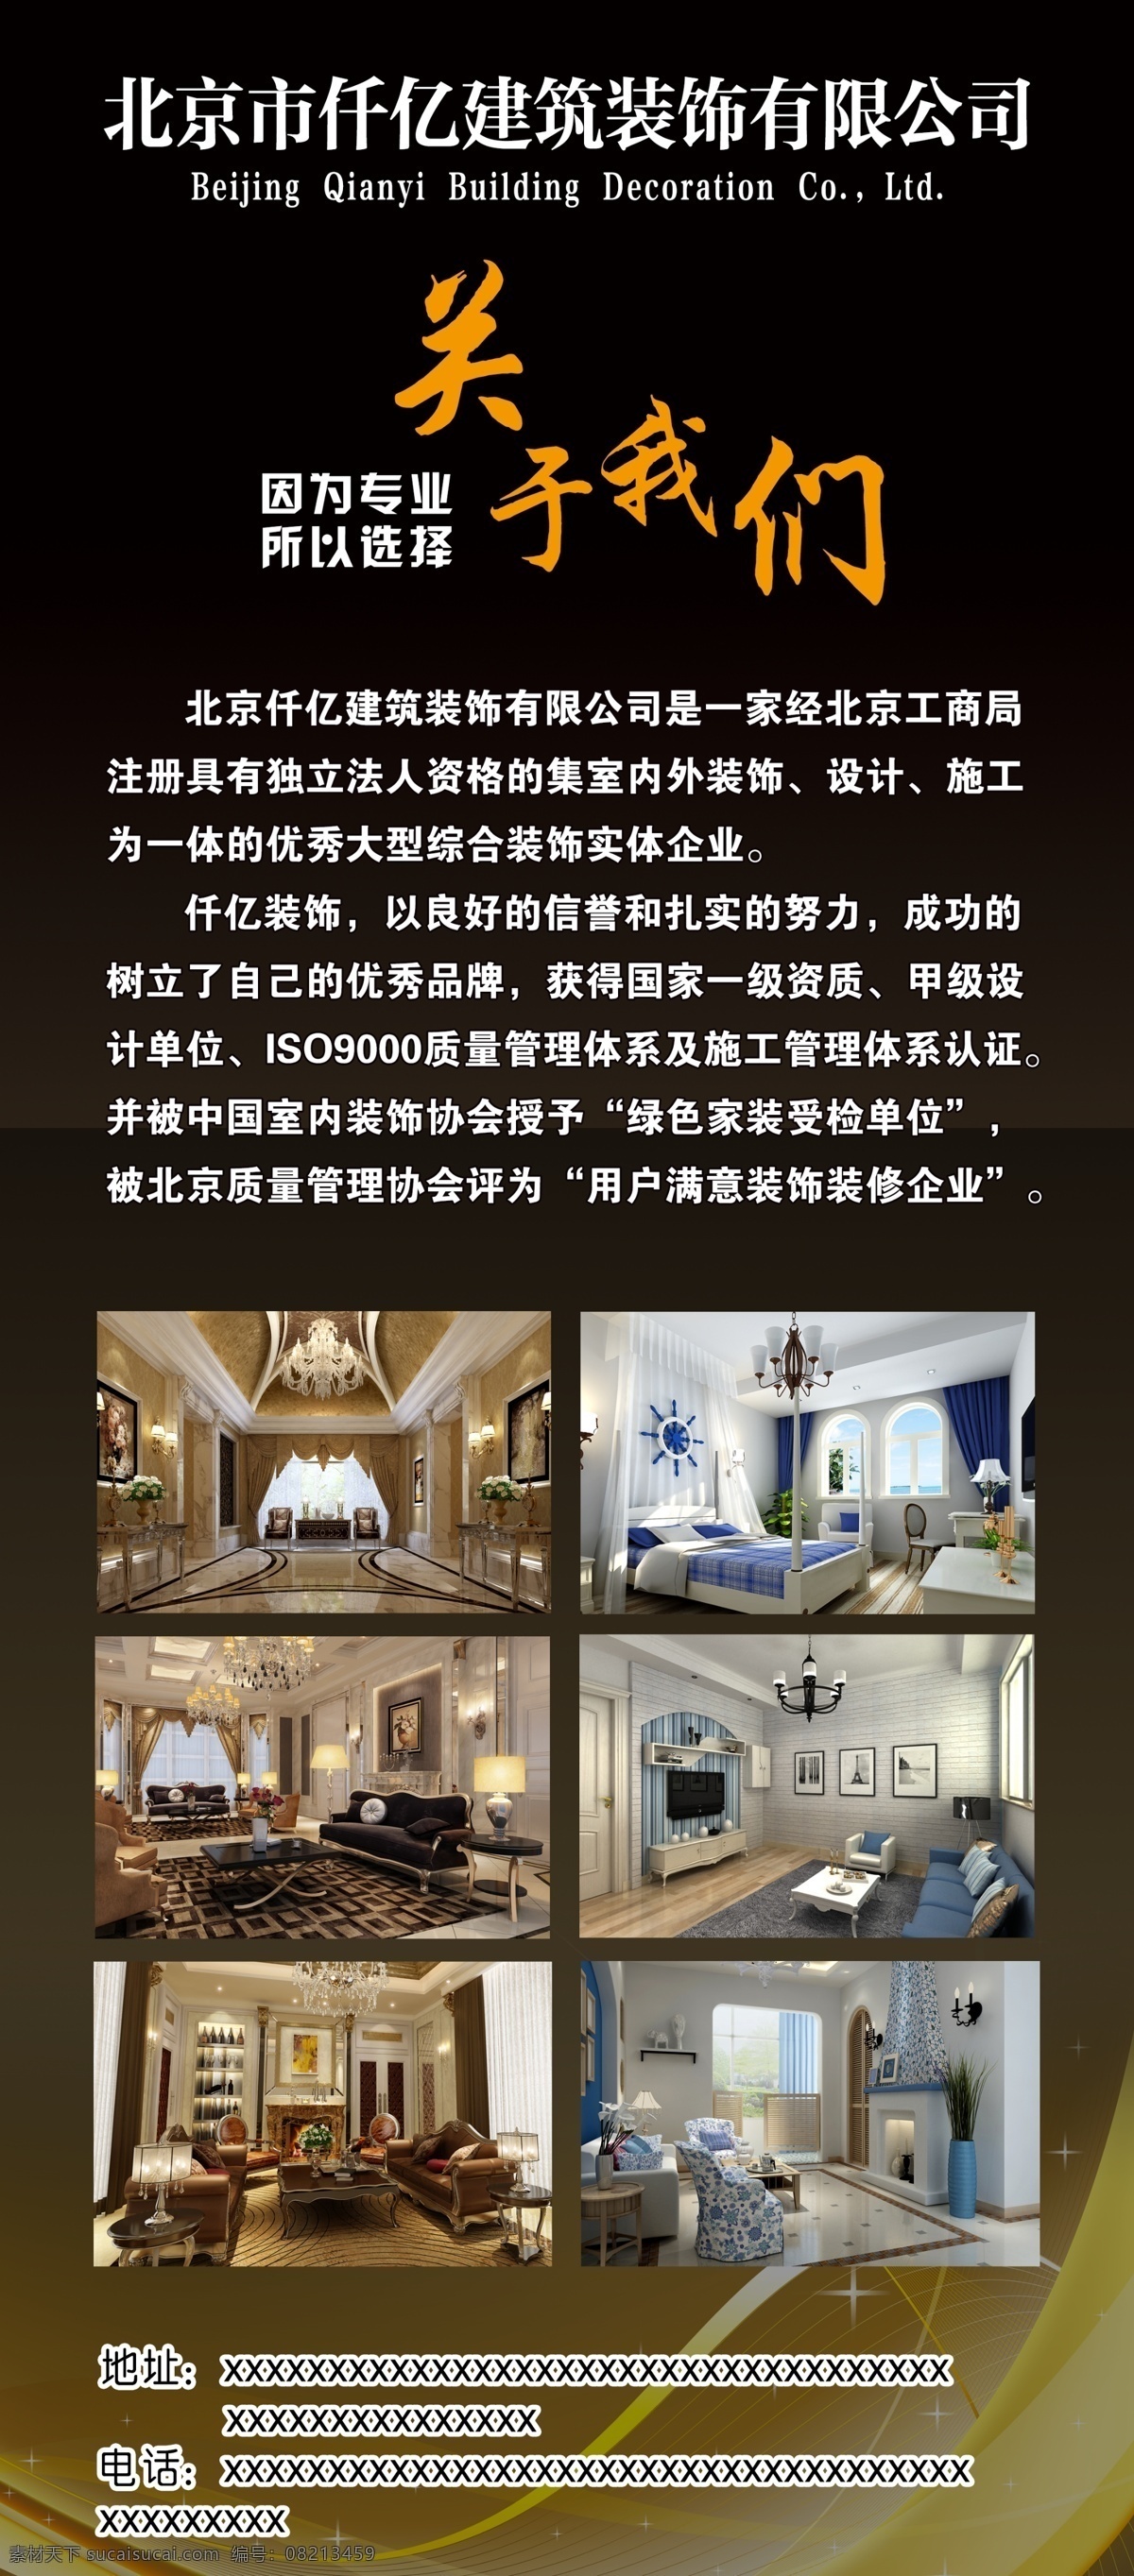 装修公司 关于我们 装饰 装修 房子 北京